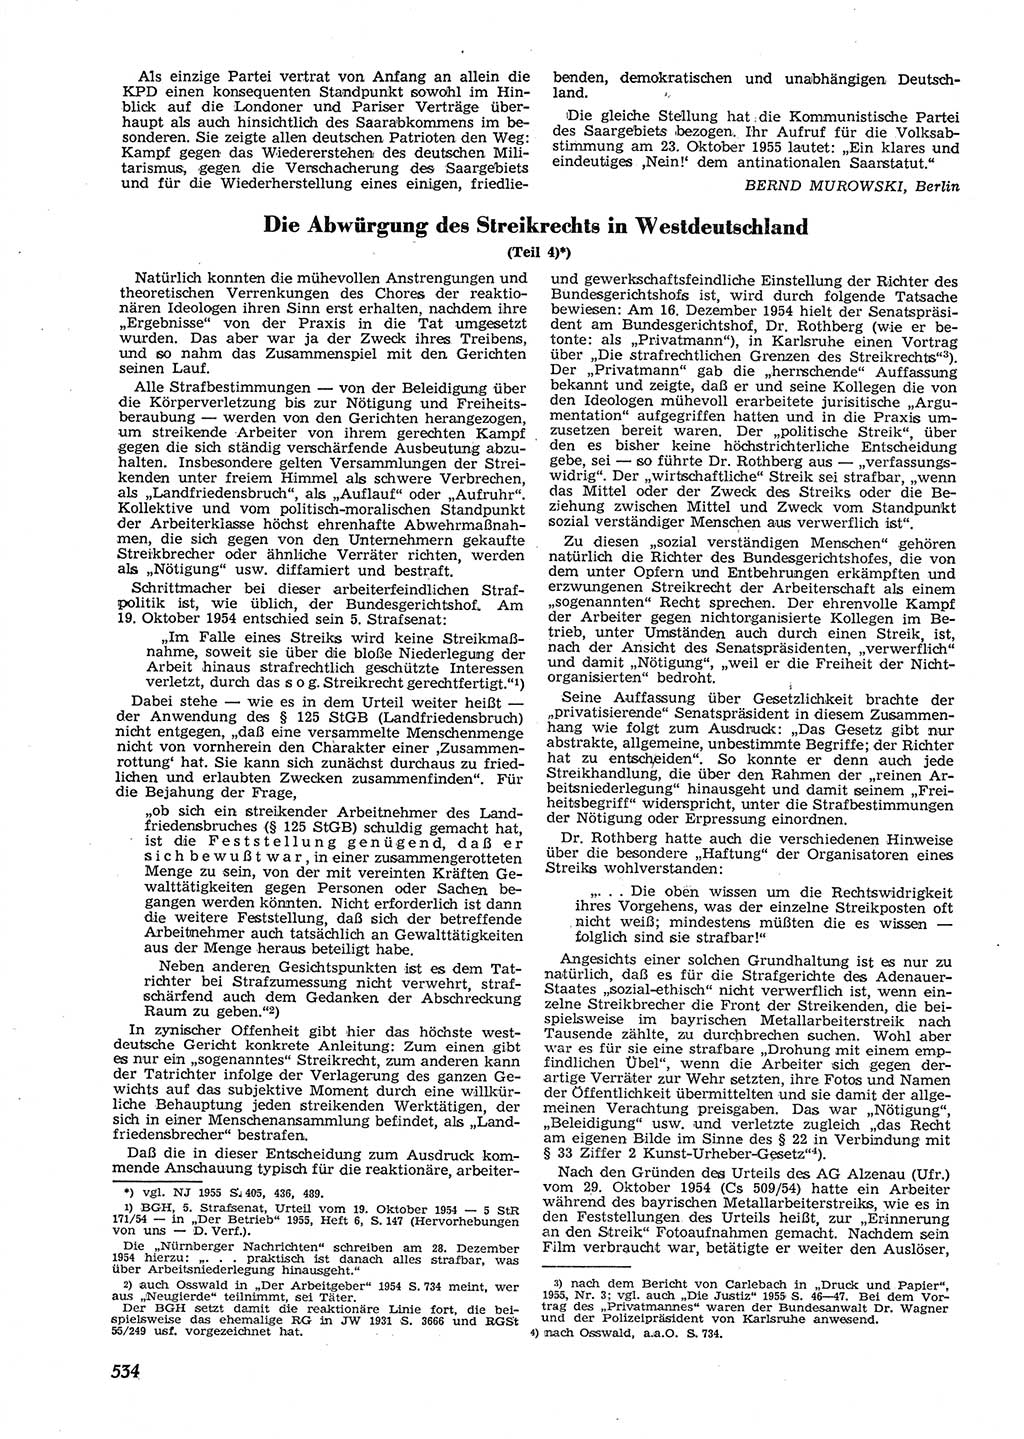 Neue Justiz (NJ), Zeitschrift für Recht und Rechtswissenschaft [Deutsche Demokratische Republik (DDR)], 9. Jahrgang 1955, Seite 534 (NJ DDR 1955, S. 534)